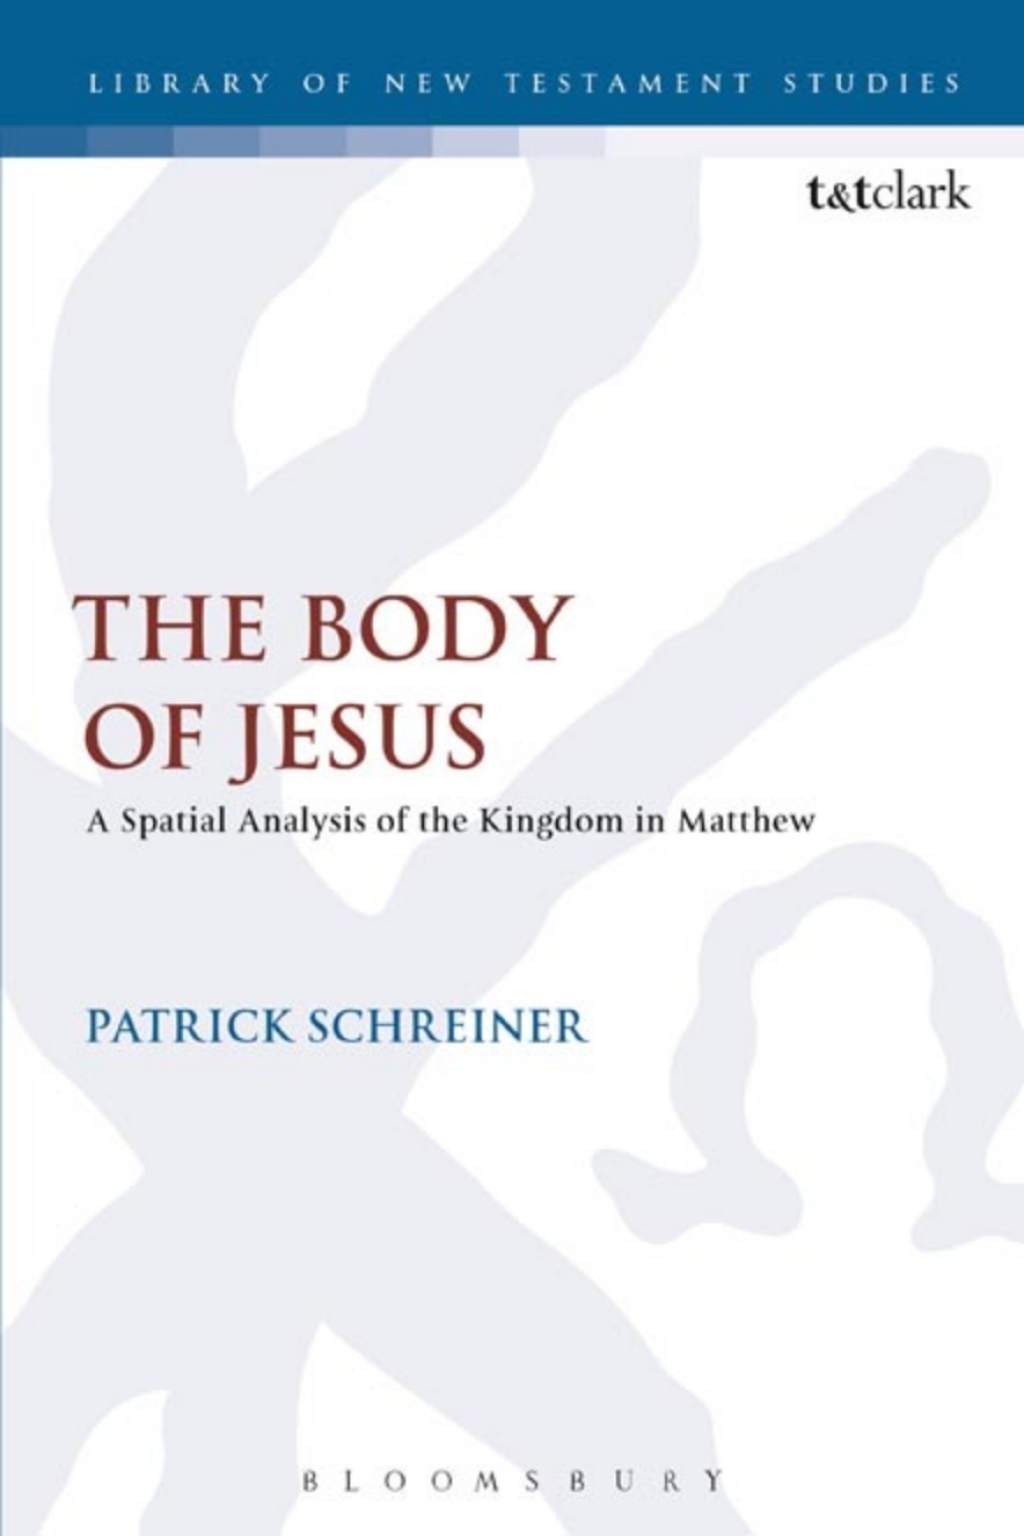 The Body of Jesus (eBook) - Patrick Schreiner